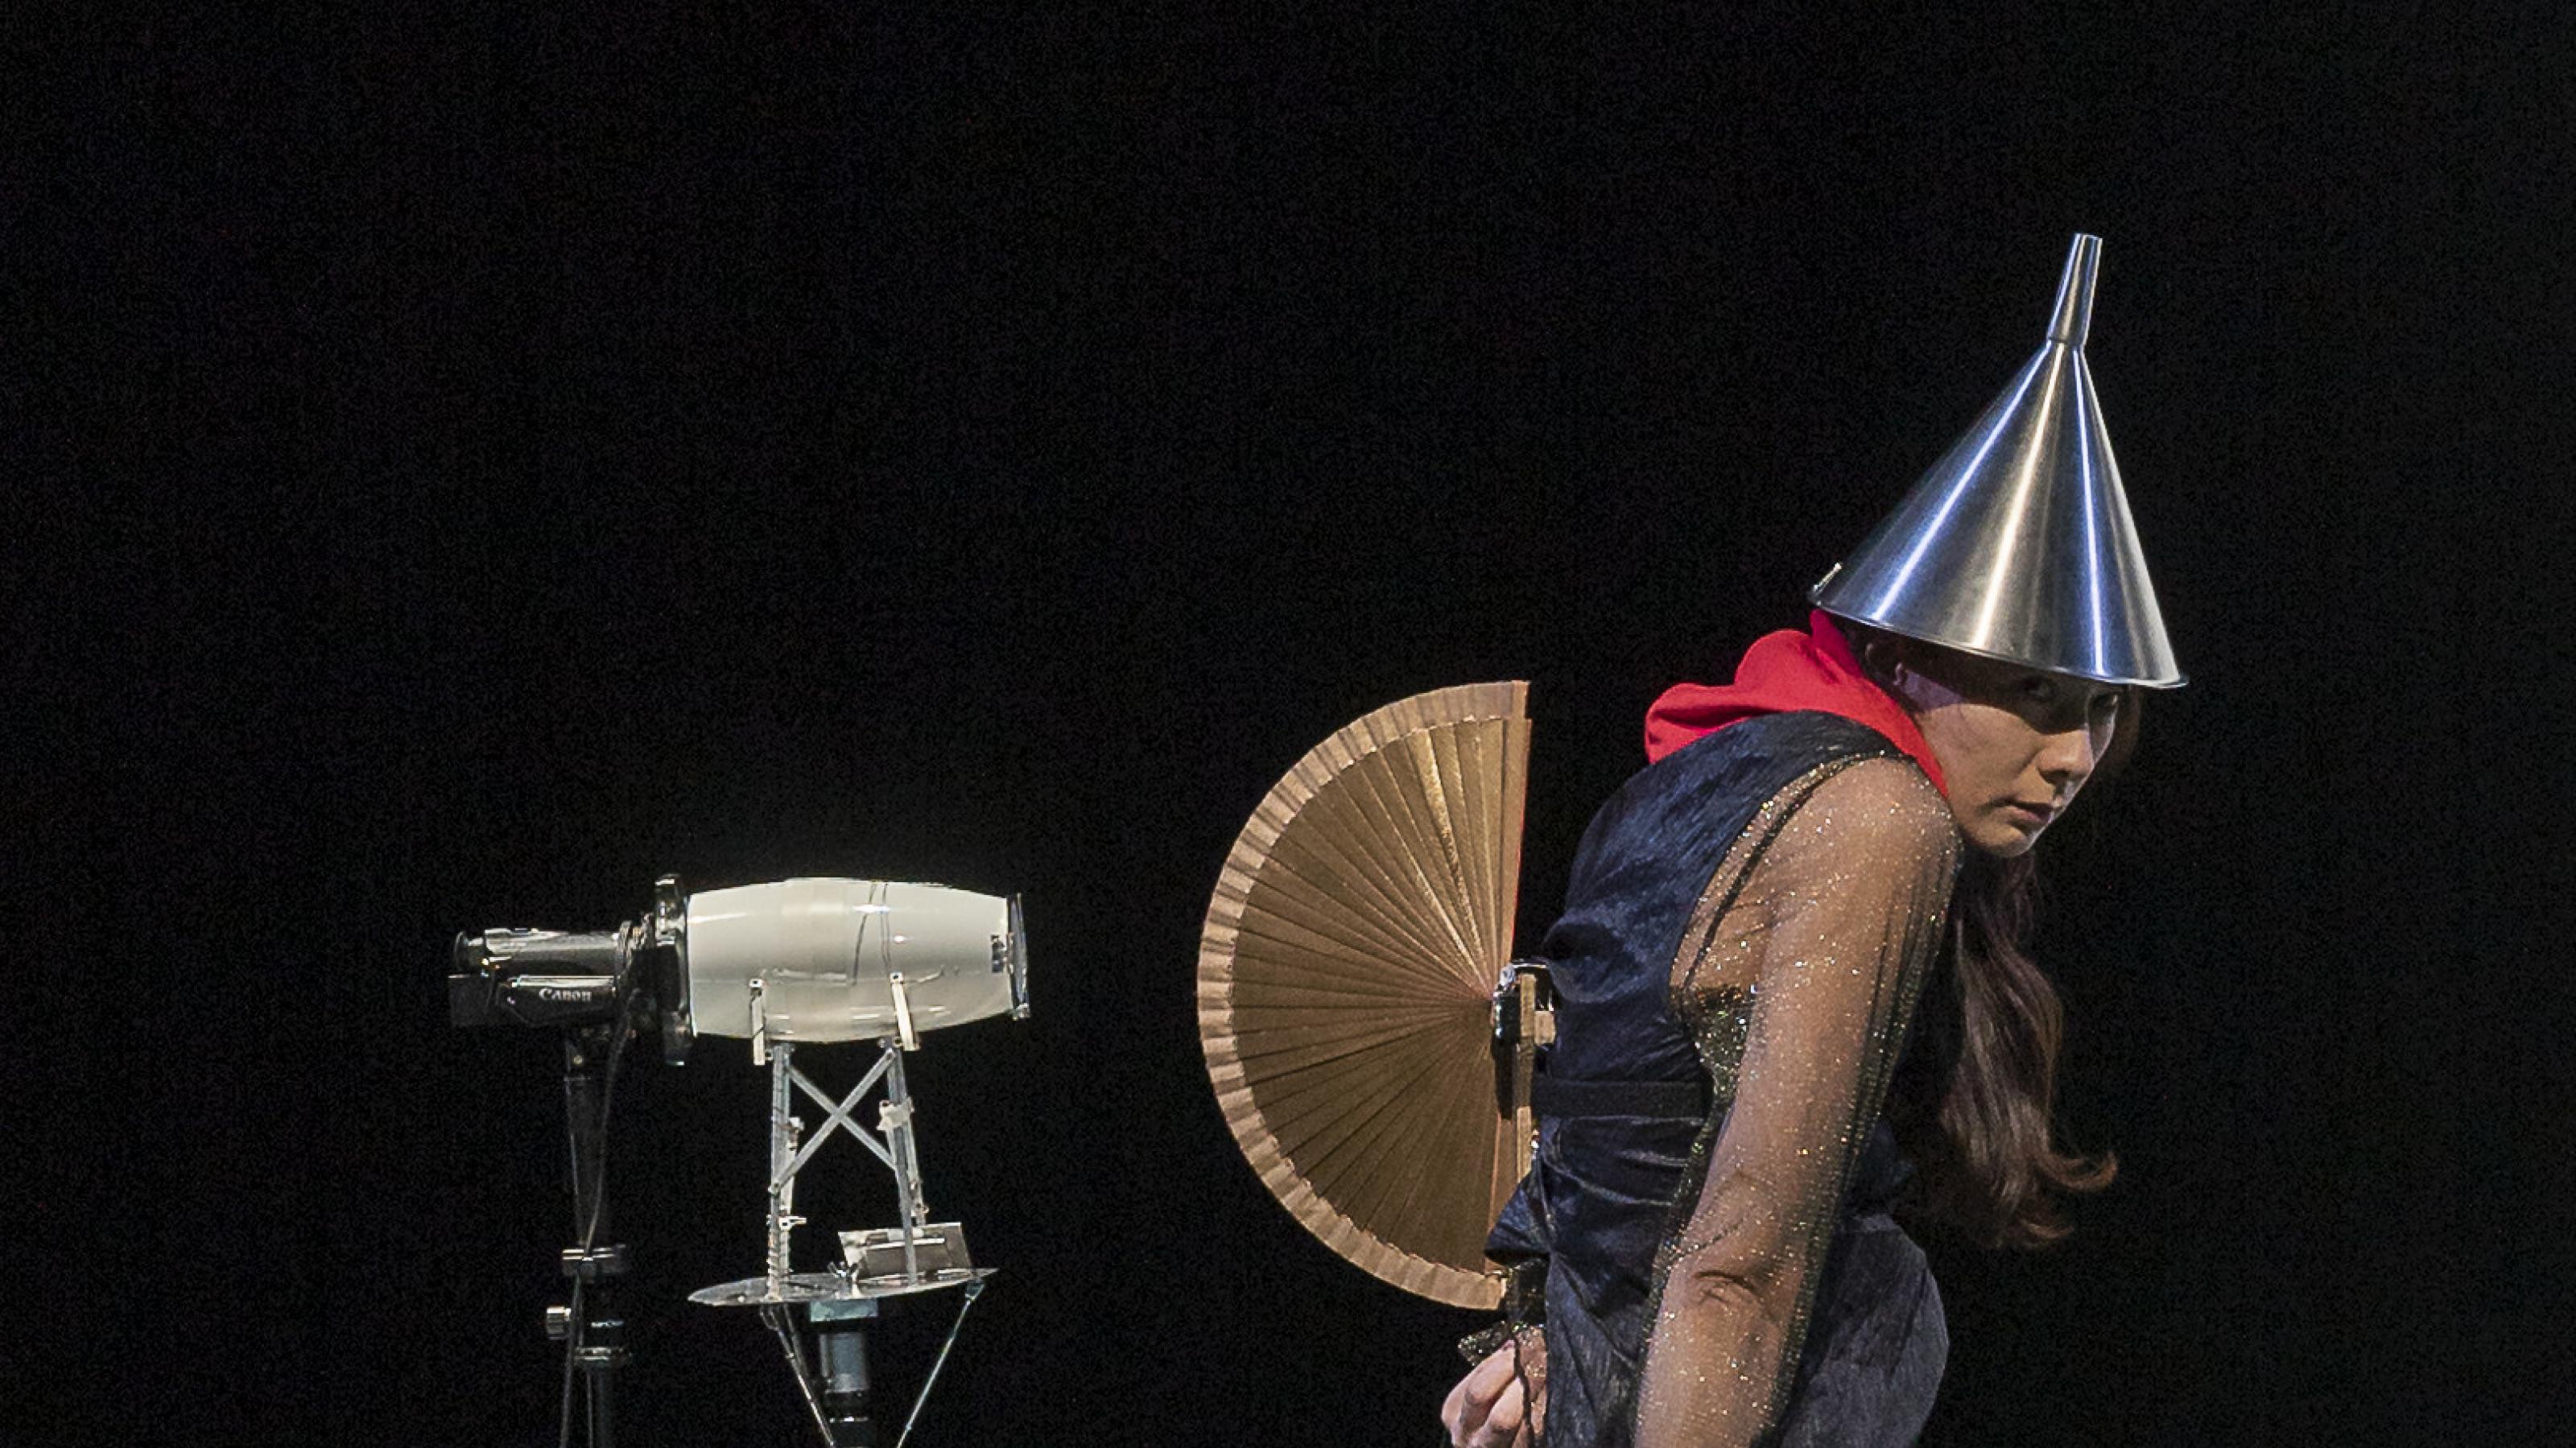 Die Darstellerin Elisabeth Hofmann steht auf der Bühne, als sei sie eine Figur aus einem Bild von Hieronymus Bosch. Sie trägt einen Trichter auf dem Kopf und einen geöffneten Fächer auf dem Rücken, wie eine Eidechse mit aufgeplustertem Kamm.